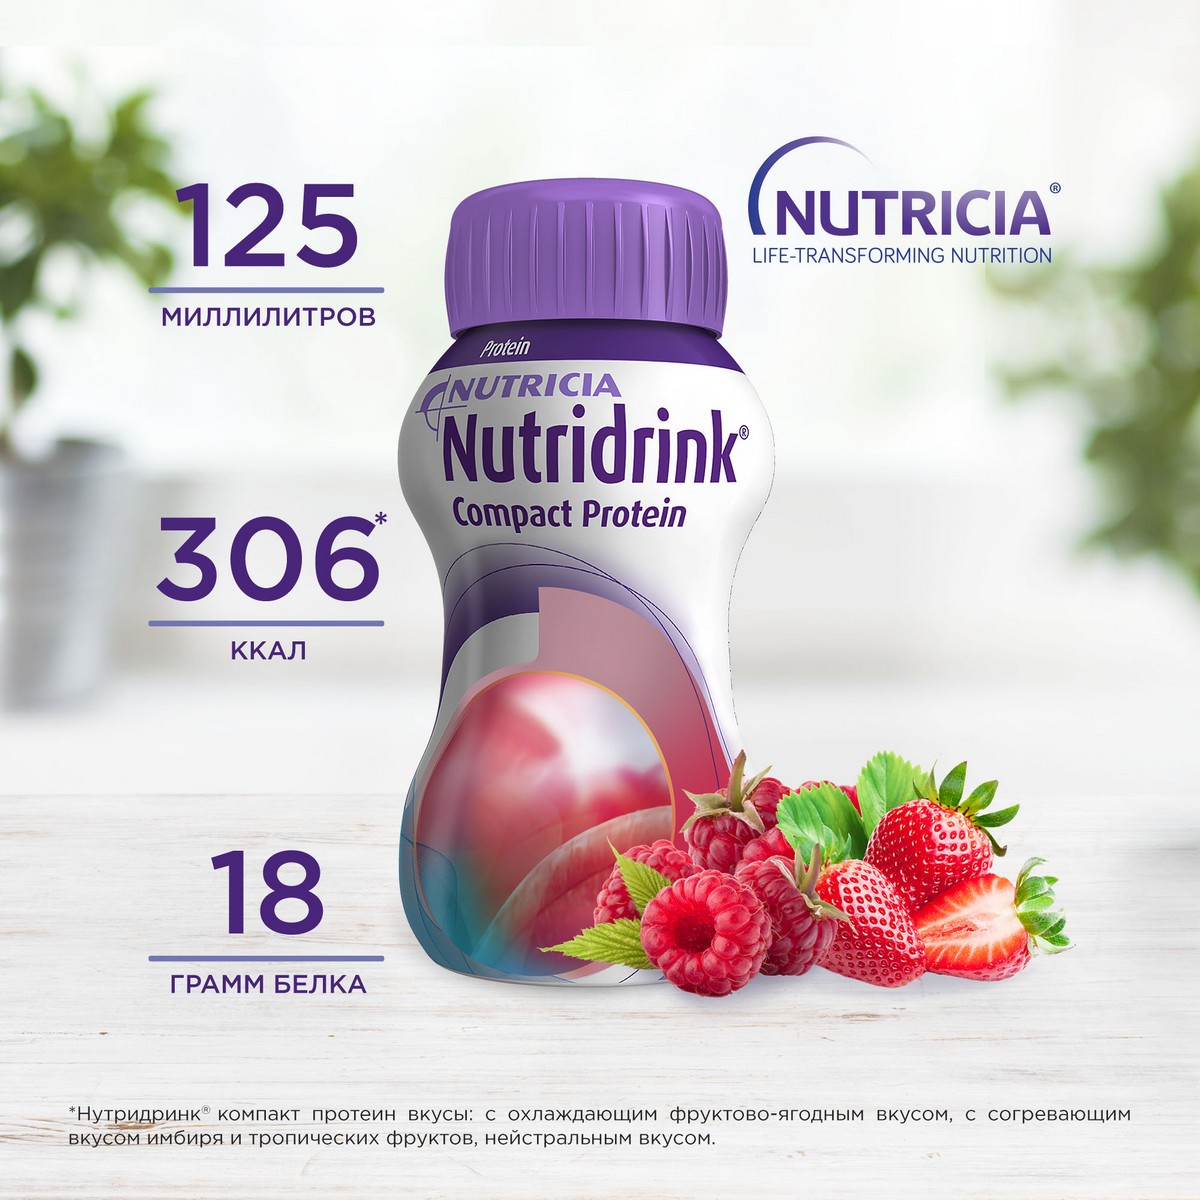 Нутридринк Компакт Протеин с охлаждающим фруктово-ягодным вкусом, 4 .